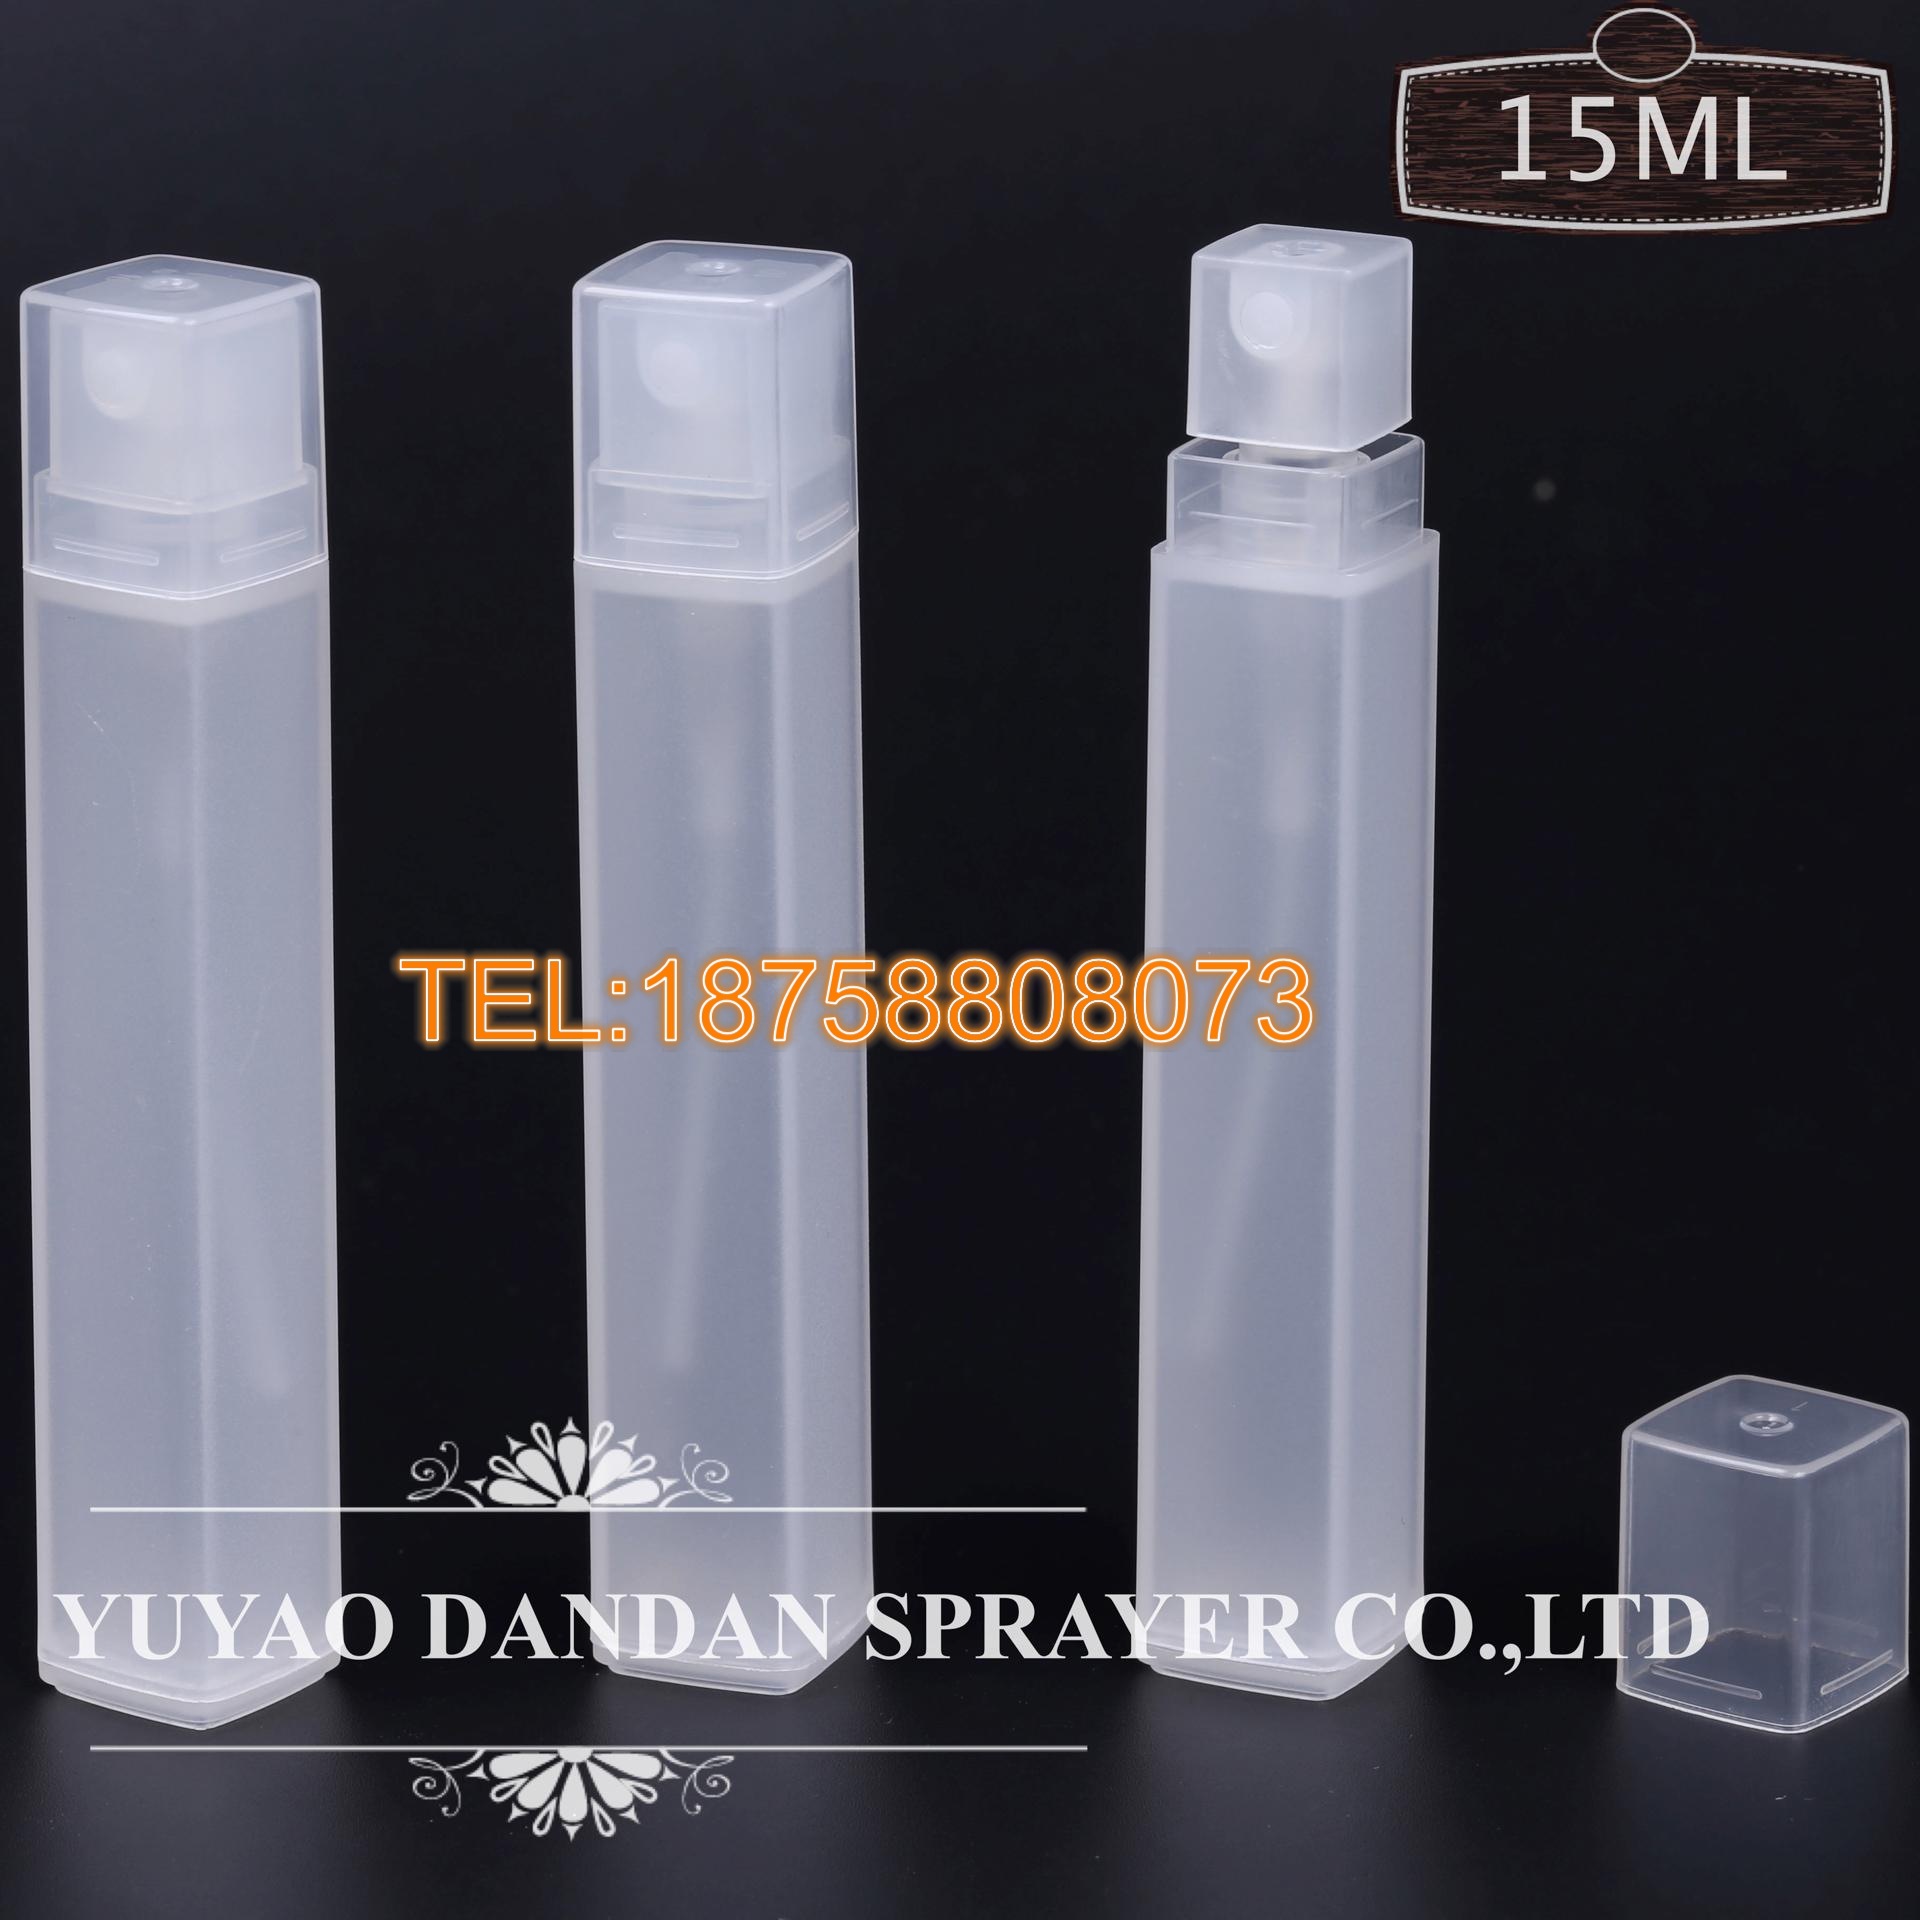 厂家直销10ml 15ml新款方管喷雾瓶 卡口塑料香水瓶塑料香水喷雾瓶示例图4